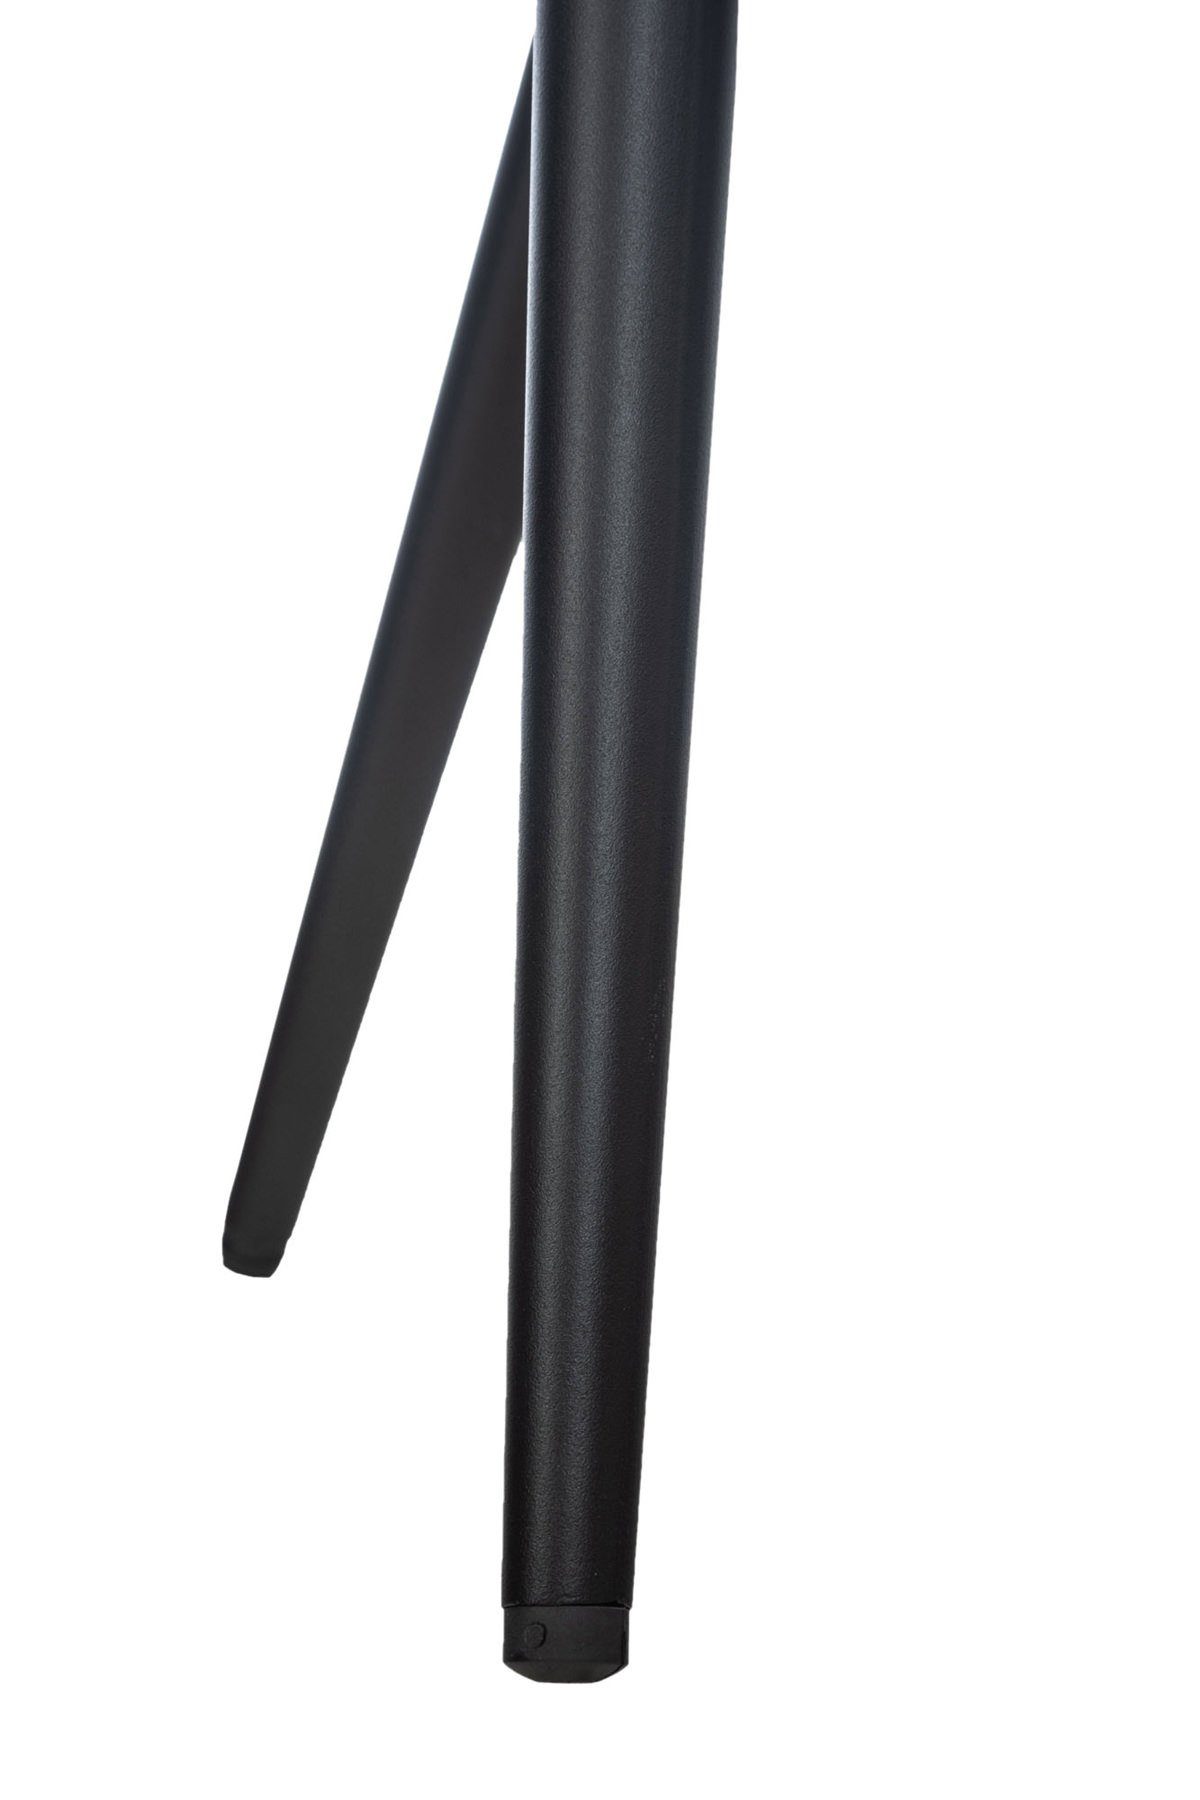 Lamfol Metall schwarz - Gestell: - (Küchenstuhl Sitzfläche: grau - hochwertig Konferenzstuhl Stoff mit gepolsterter Sitzfläche - TPFLiving Esstischstuhl Wohnzimmerstuhl), Esszimmerstuhl